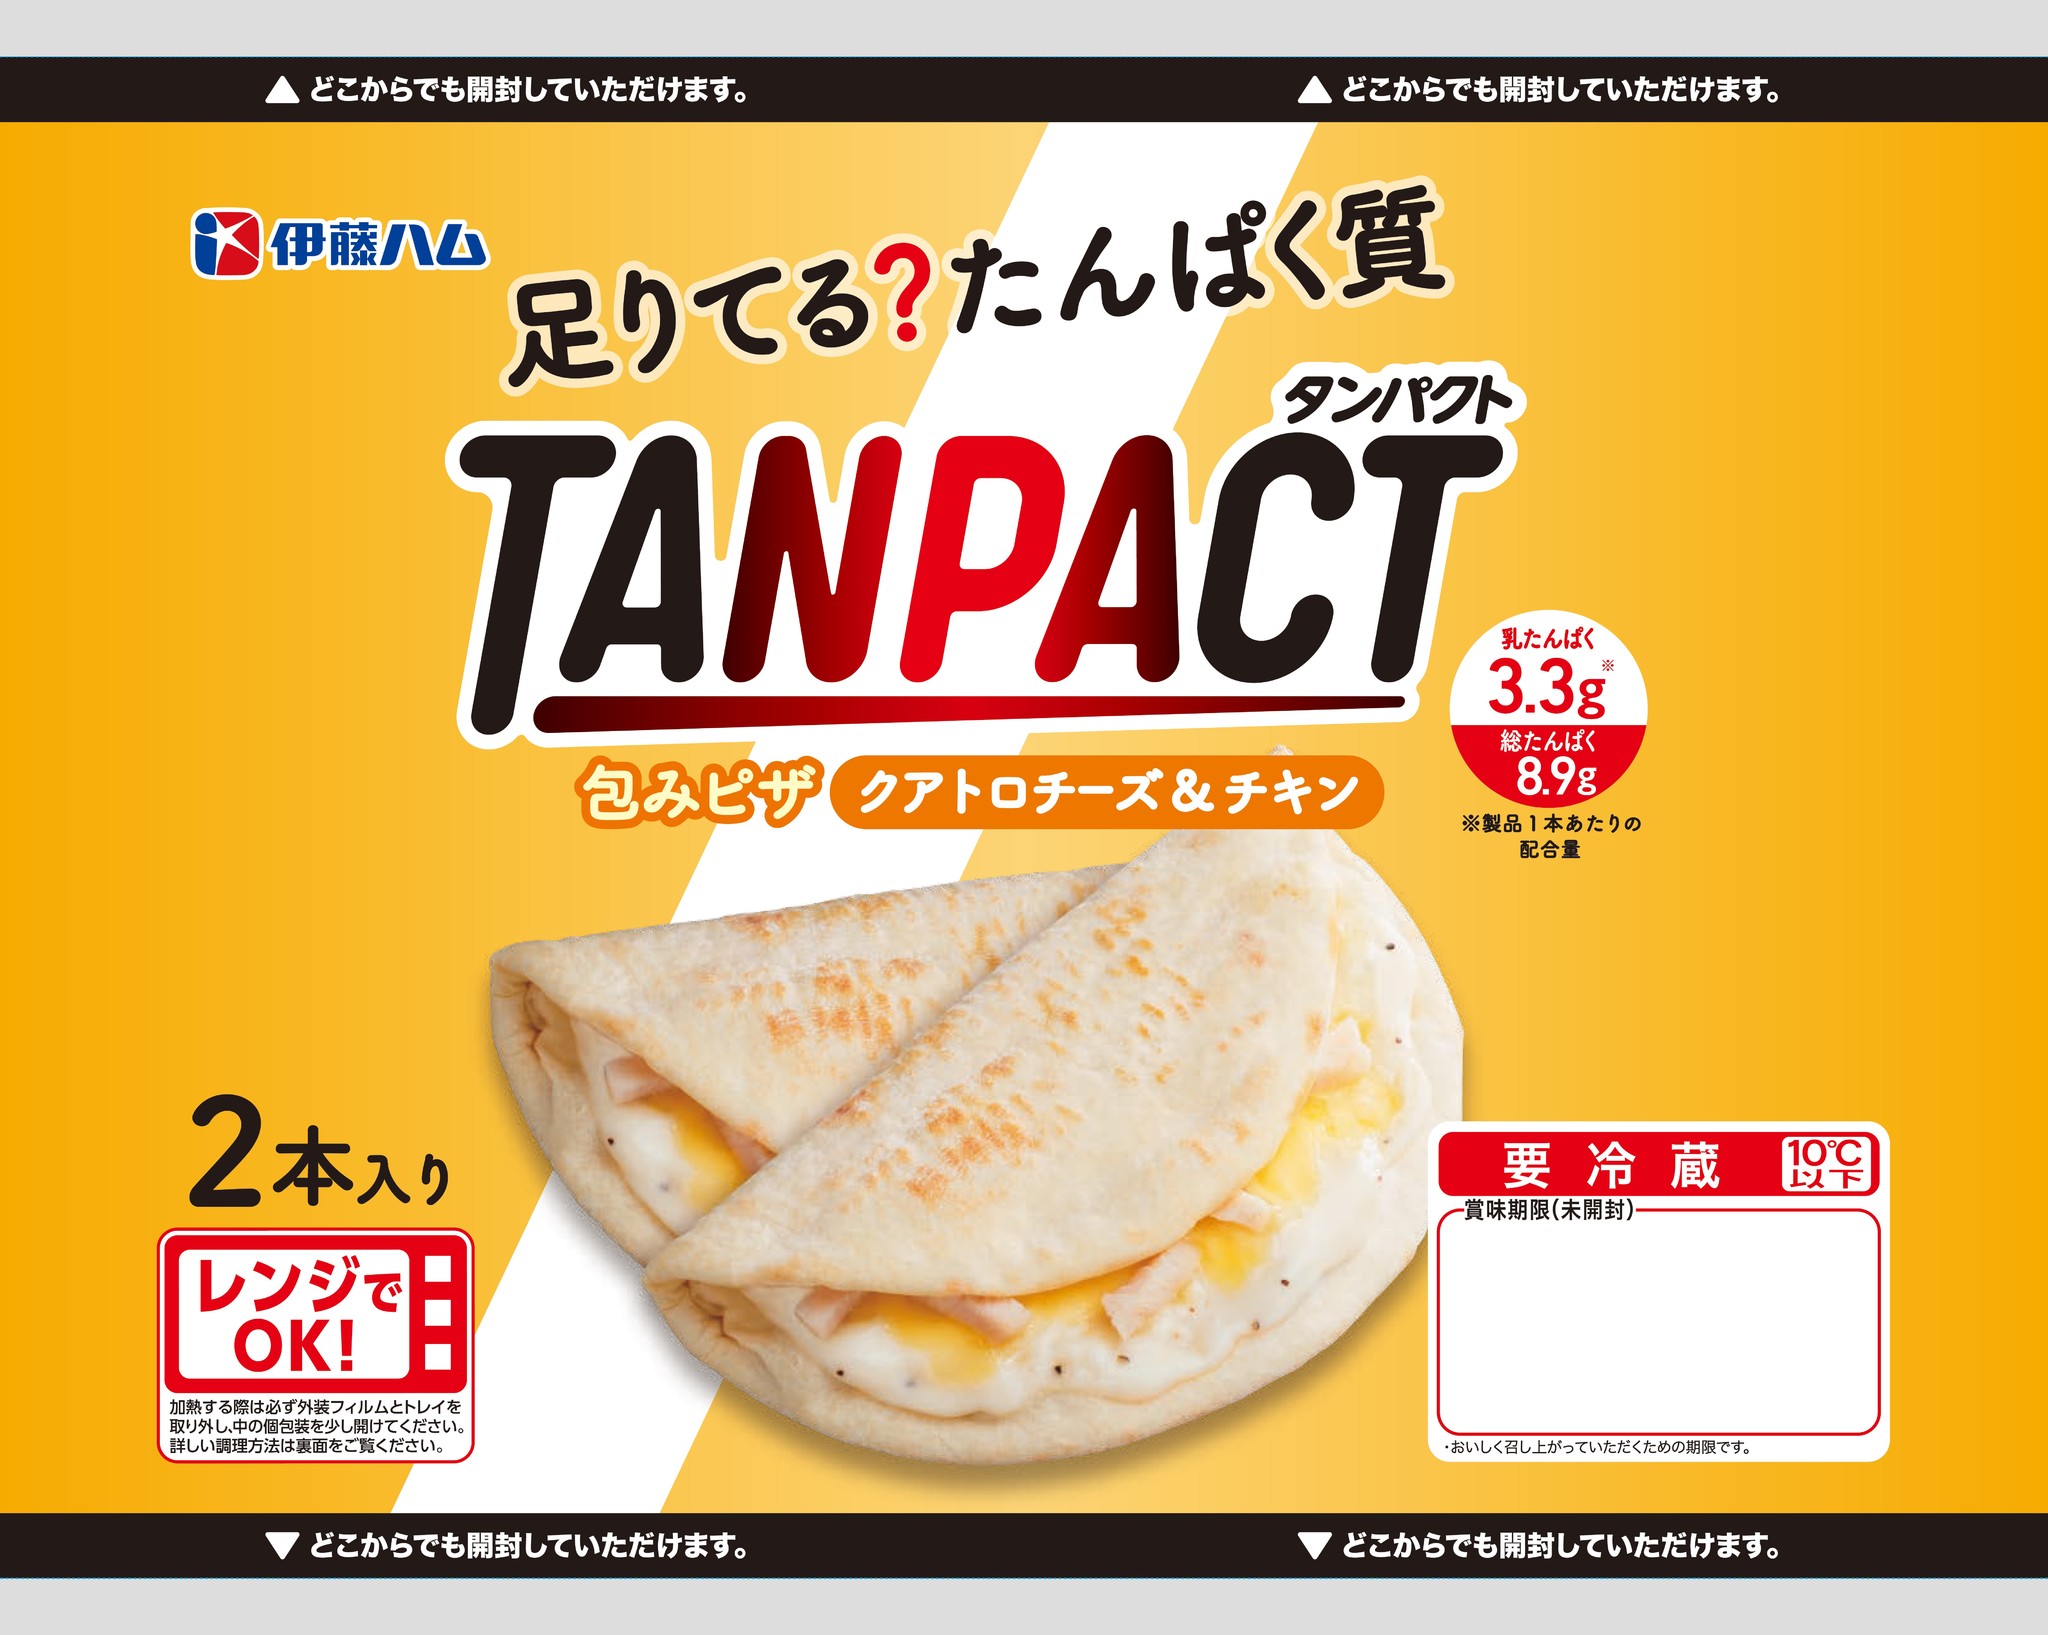 TANPACT」ブランドから包みピザ2品を新発売｜伊藤ハム米久HDのプレスリリース